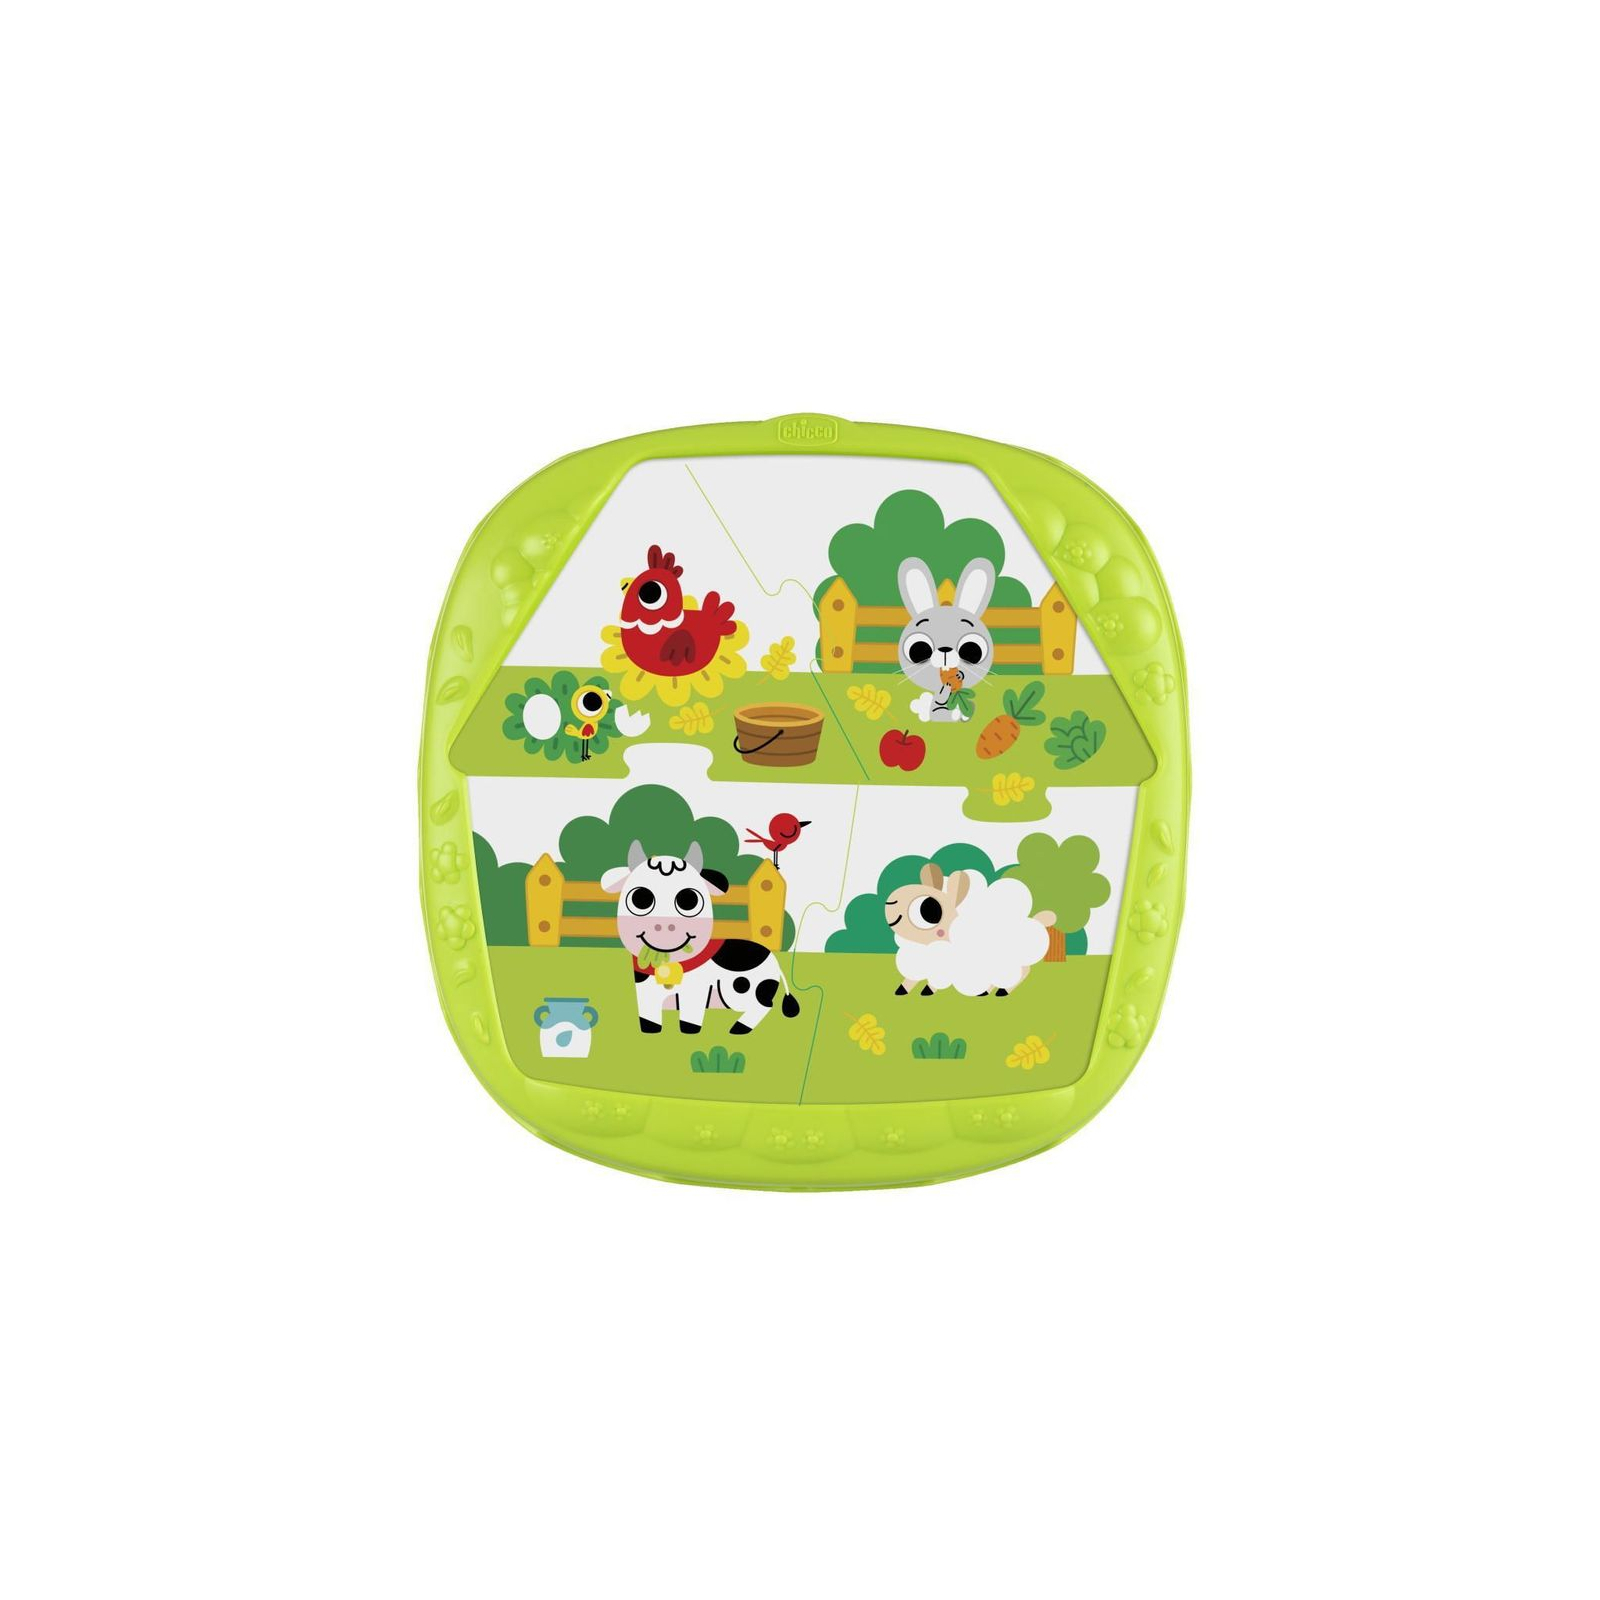 Развивающая игрушка Chicco сортер 2 в 1 Фермерский домик (11085.00) изображение 9